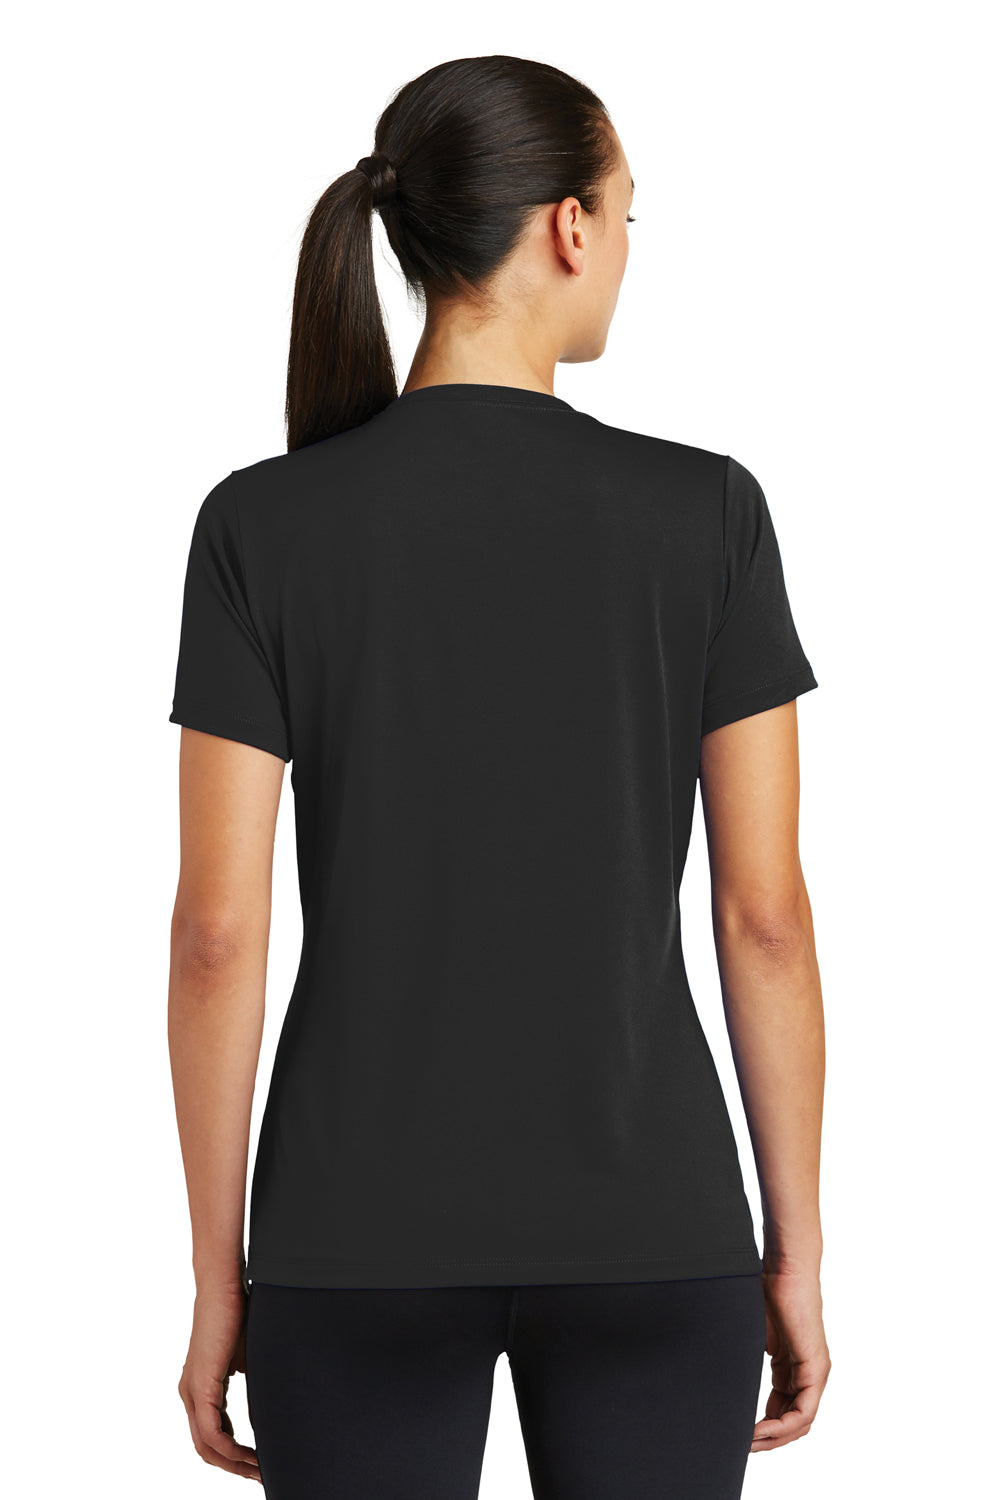 Sport-Tek LST320 Womens Tough Moisture Wicking Short Sleeve Crewneck T-Shirt Black Back